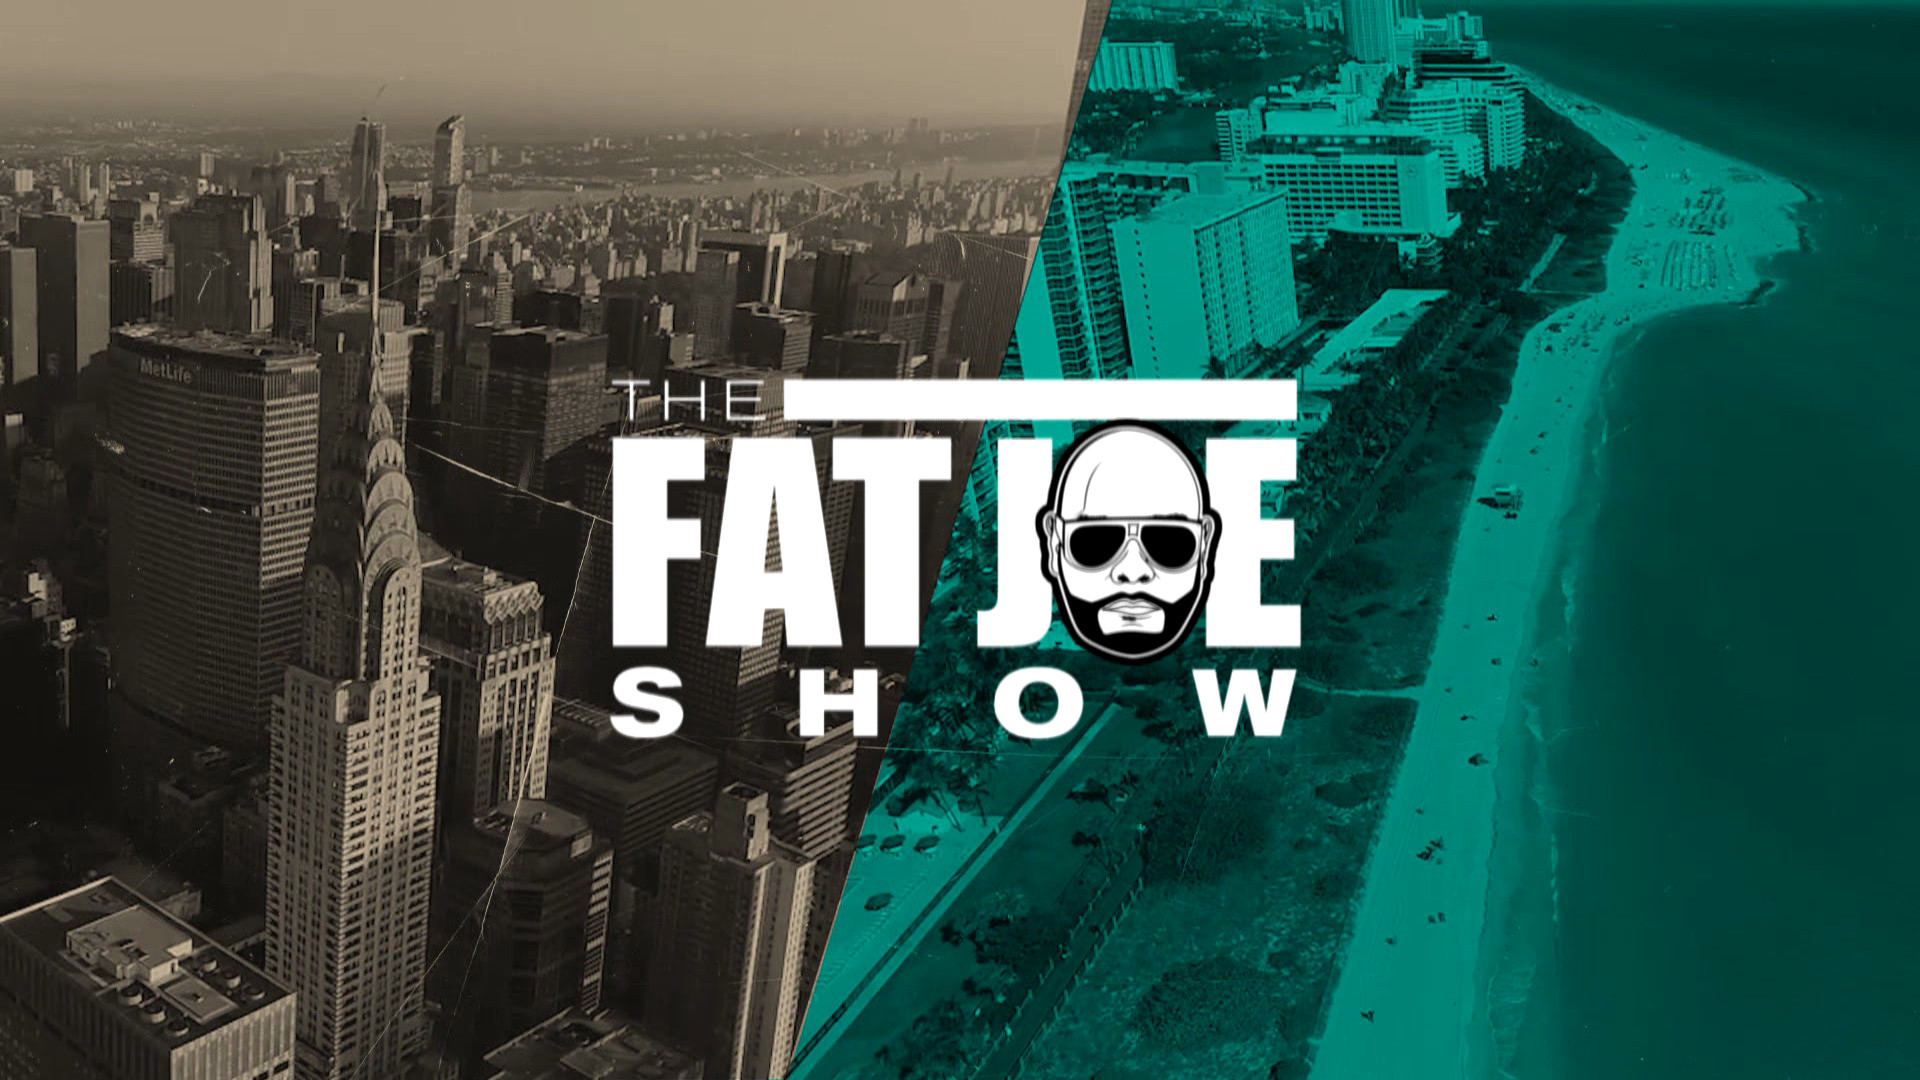 The Fat Joe Show (New Series Tuesday @ 10p ET) - REVOLT